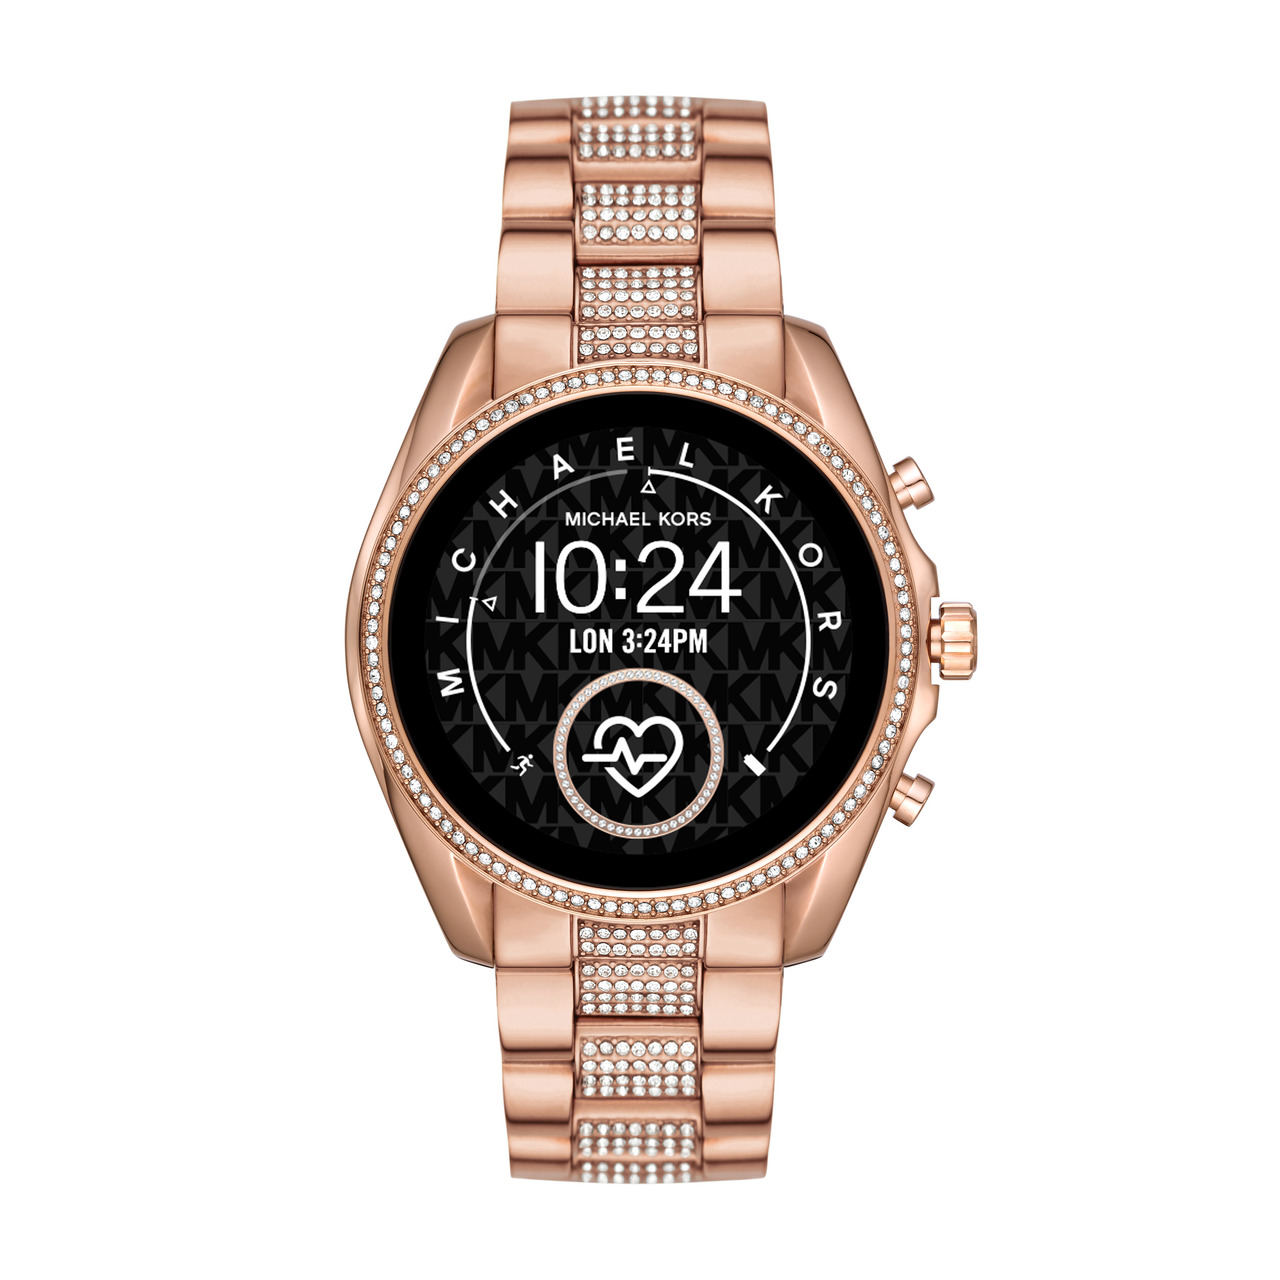 Michael Kors presenta tres nuevos diseños exclusivos de smartwatch